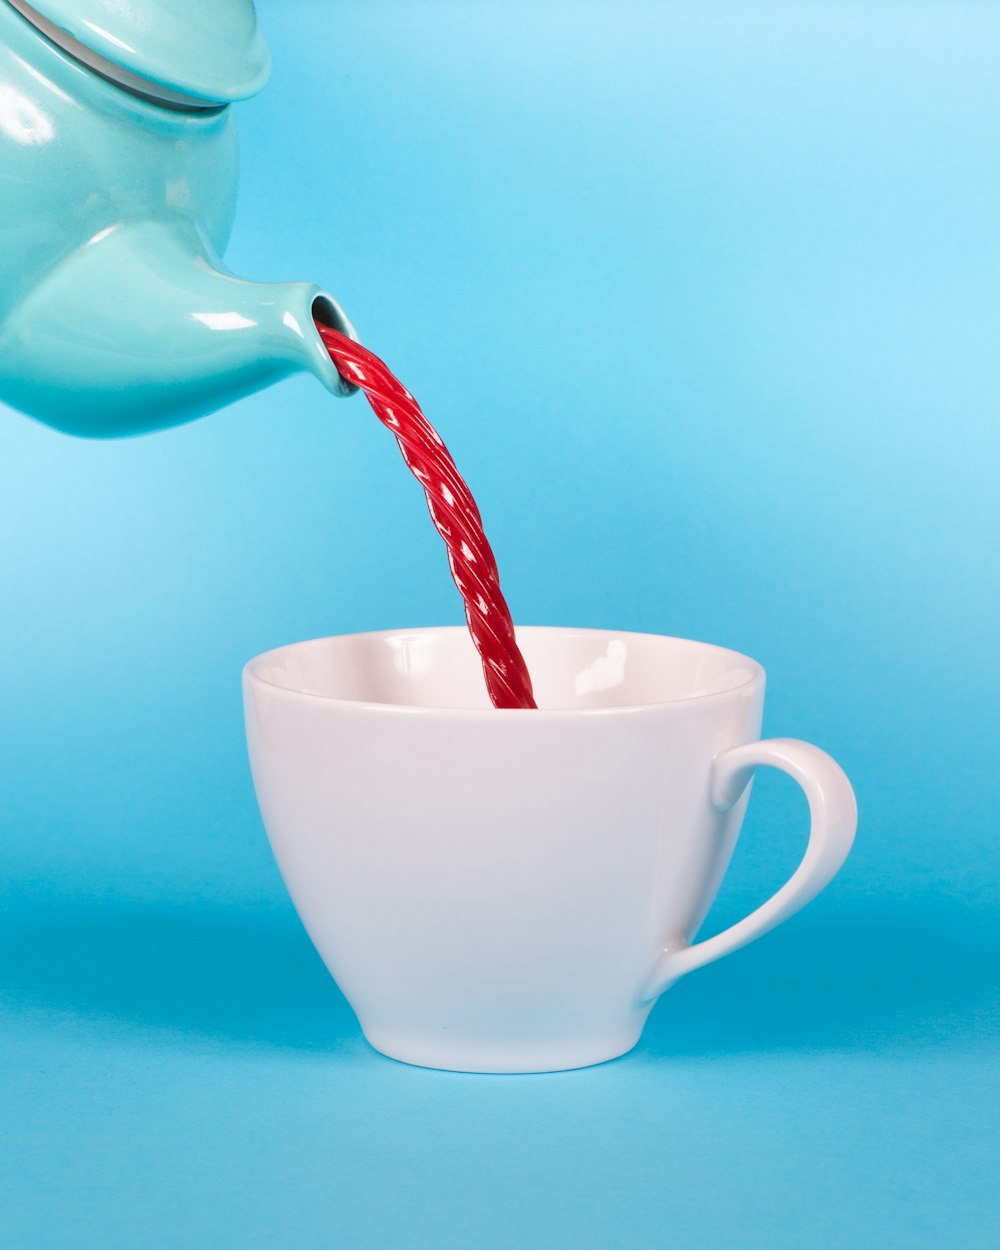 théière verte versant un liquide rouge à une tasse de thé blanche photographie en gros plan